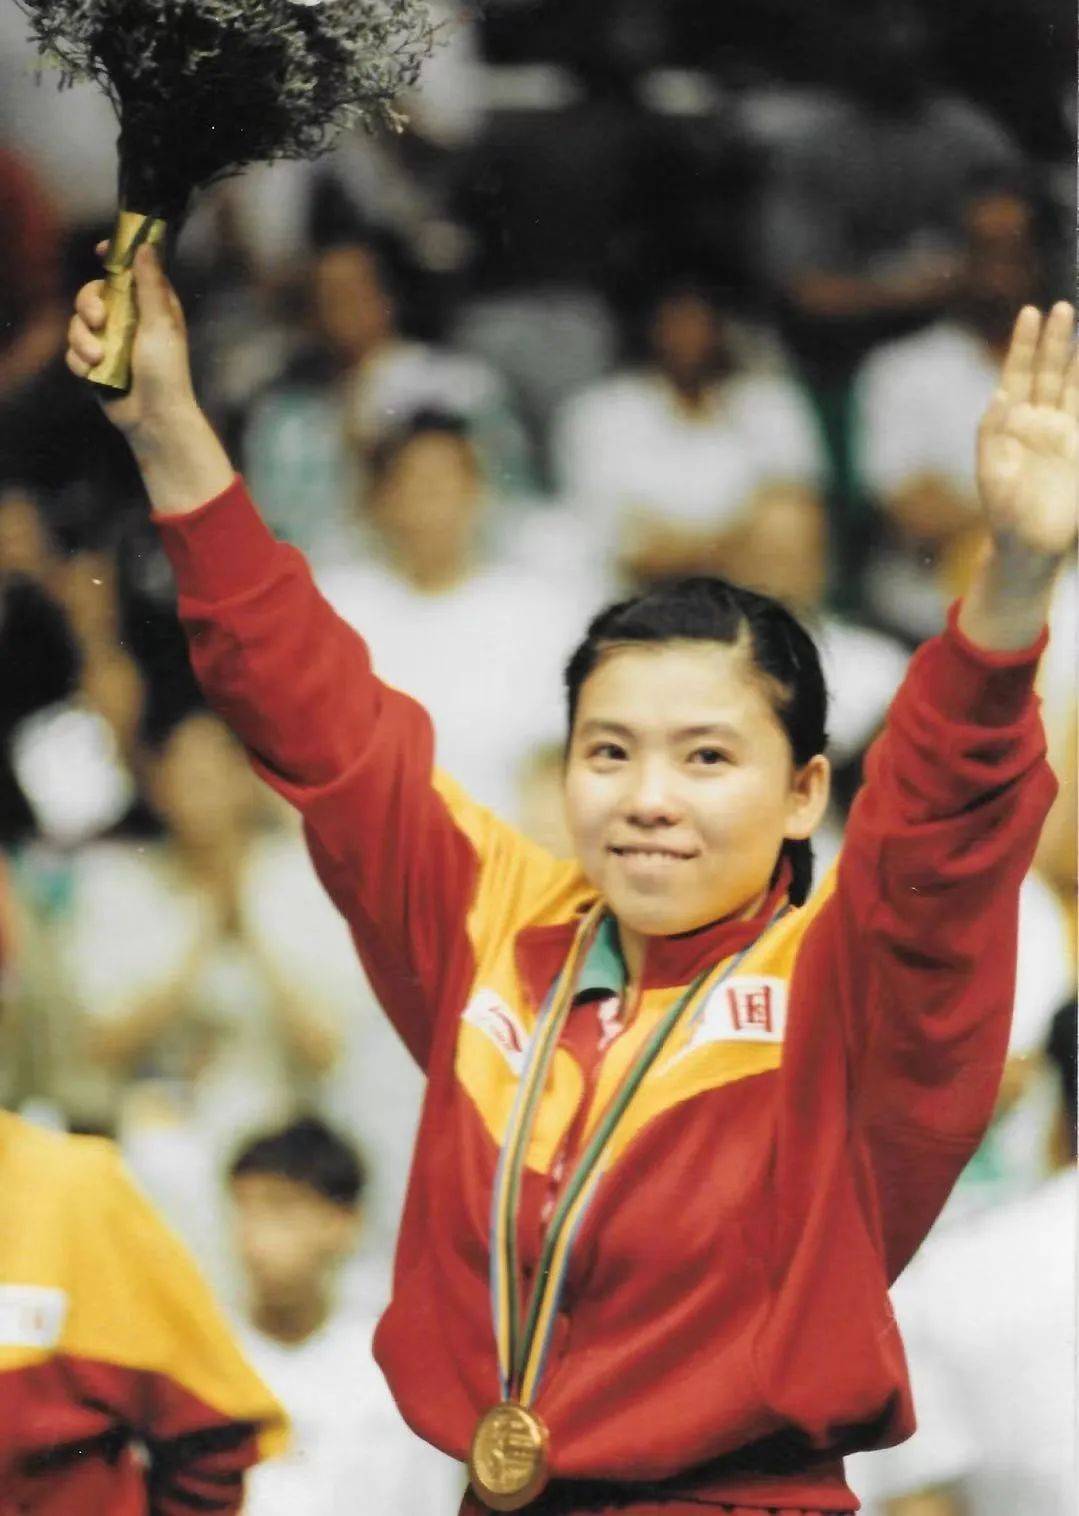 奥运冠军后代:邓亚萍儿子15岁拿8块奖牌,郎平女儿因国籍受争议